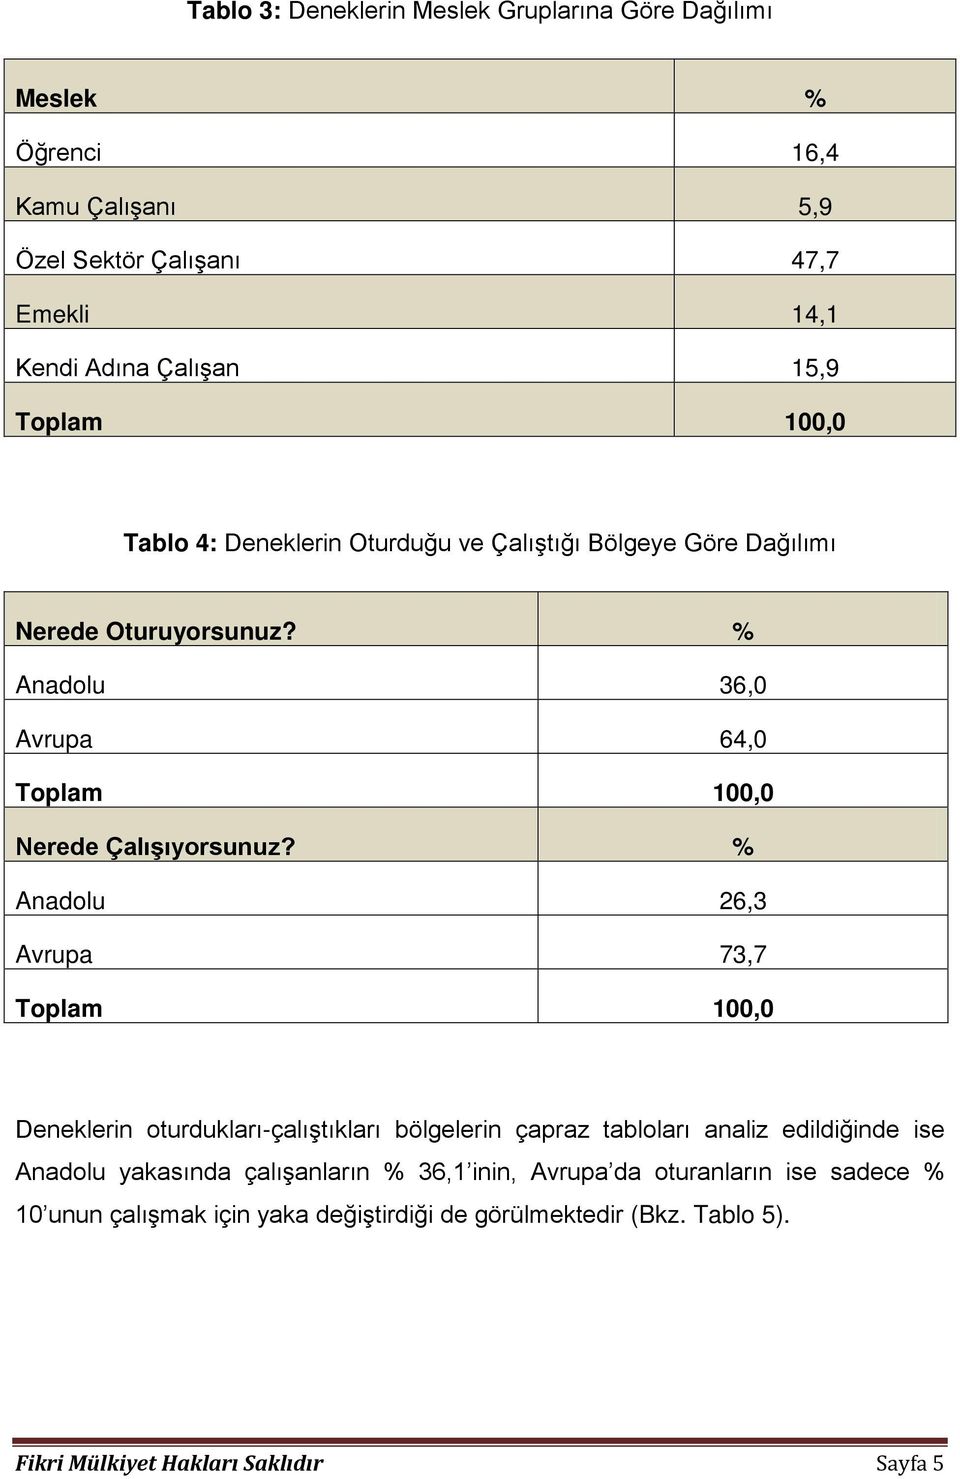 % Anadolu 26,3 Avrupa 73,7 Deneklerin oturdukları-çalıştıkları bölgelerin çapraz tabloları analiz edildiğinde ise Anadolu yakasında çalışanların %